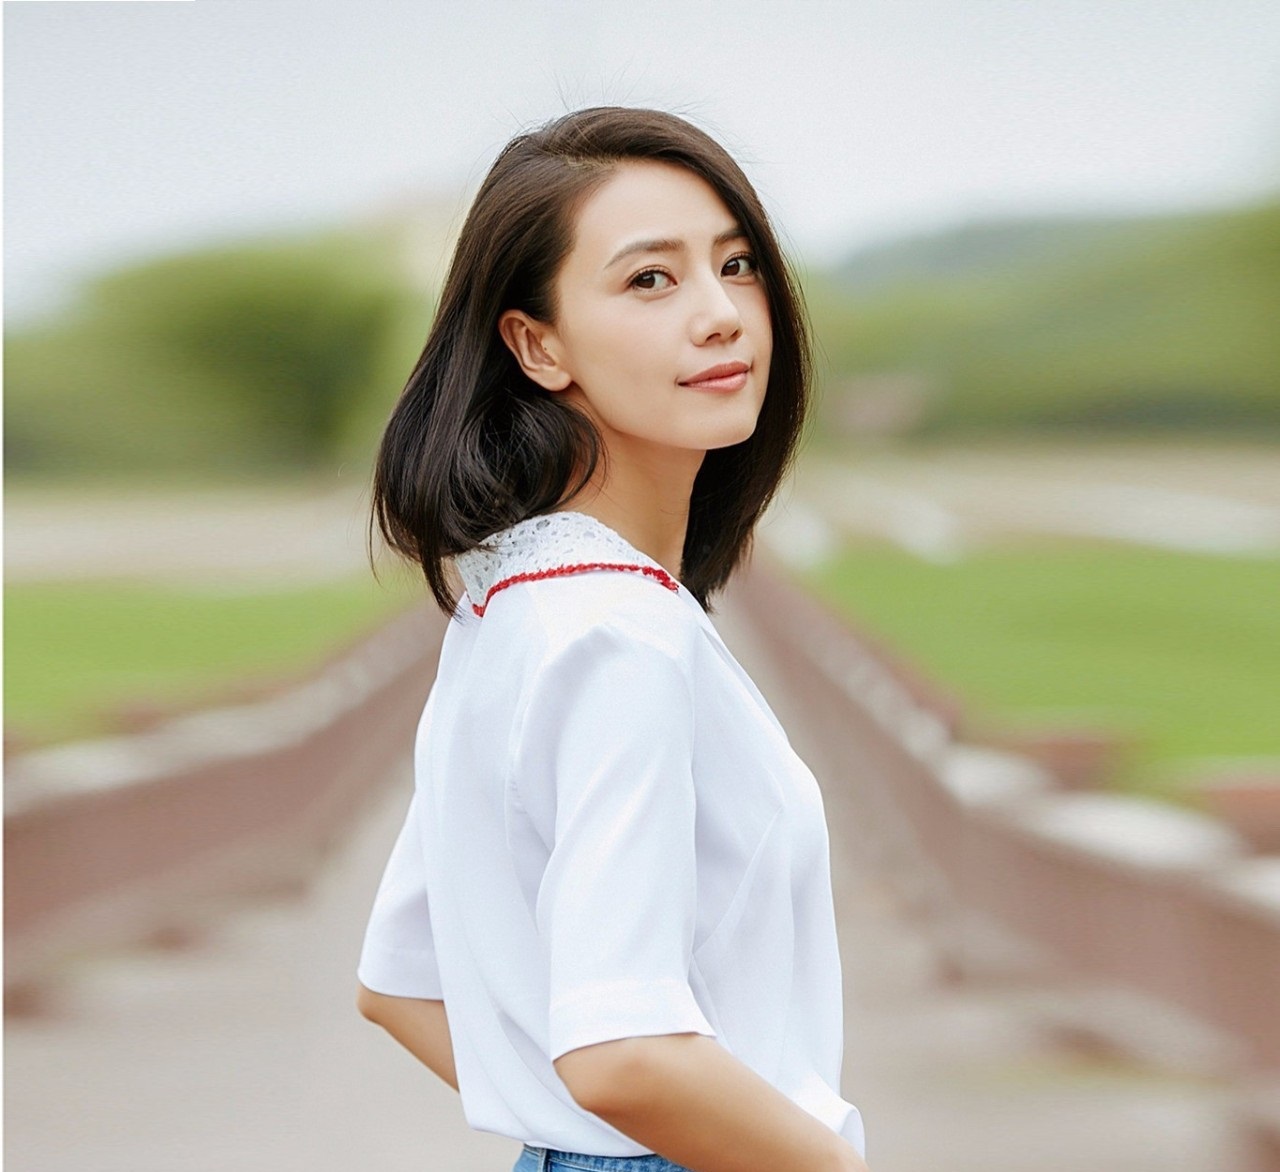 高圆圆蓝T恤搭配白色长裙造型简约 短发女神气质足-搜狐大视野-搜狐新闻